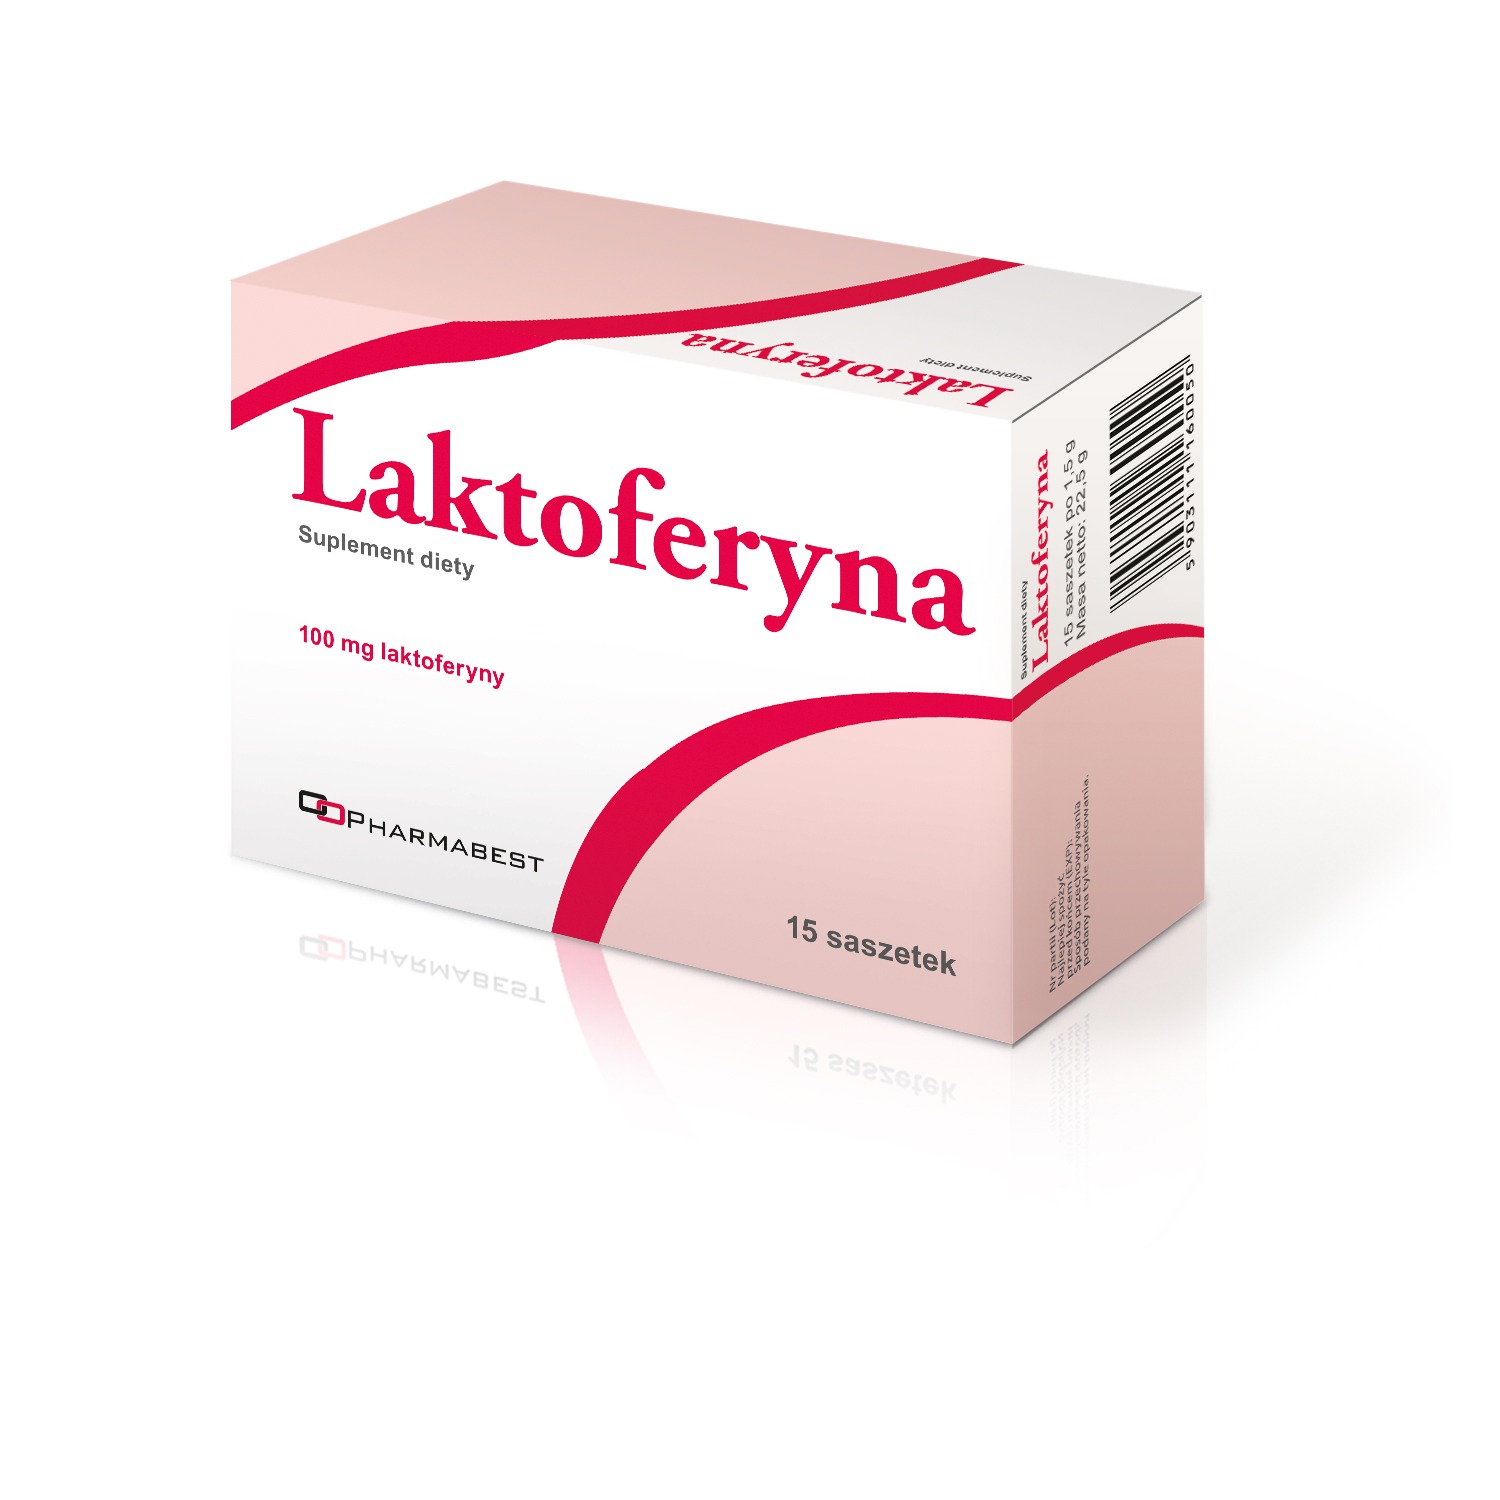 Laktoferyna-100 mg-15 saszetek